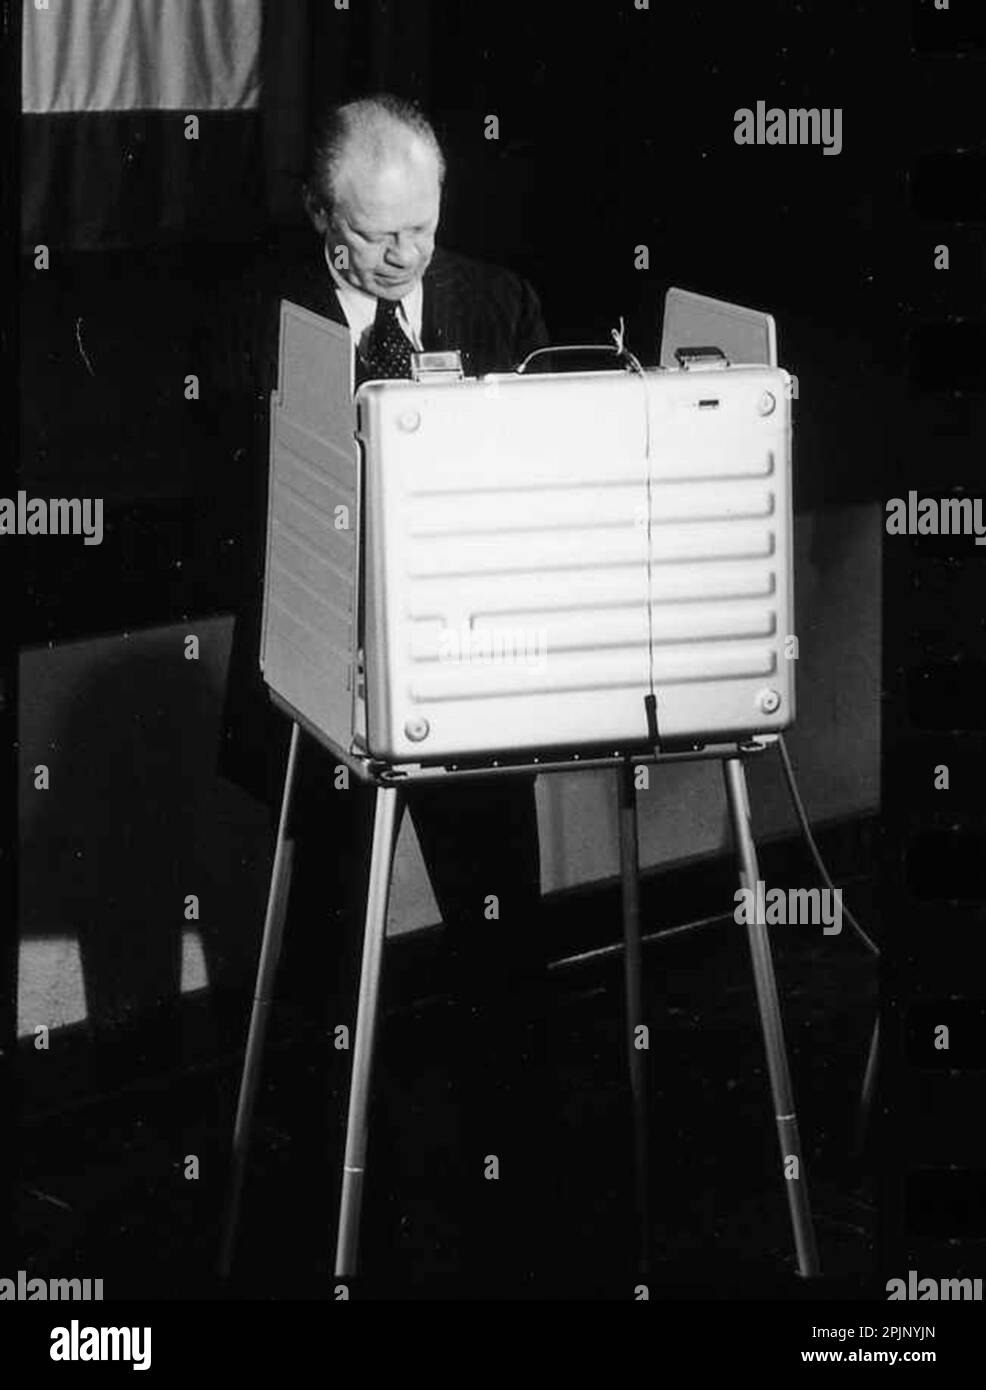 Foto von Präsident Gerald Ford bei der Wahl 1976 in Grand Rapids, Michigan, 11/2/1976. (Foto: Pressestelle des Weißen Hauses) Stockfoto